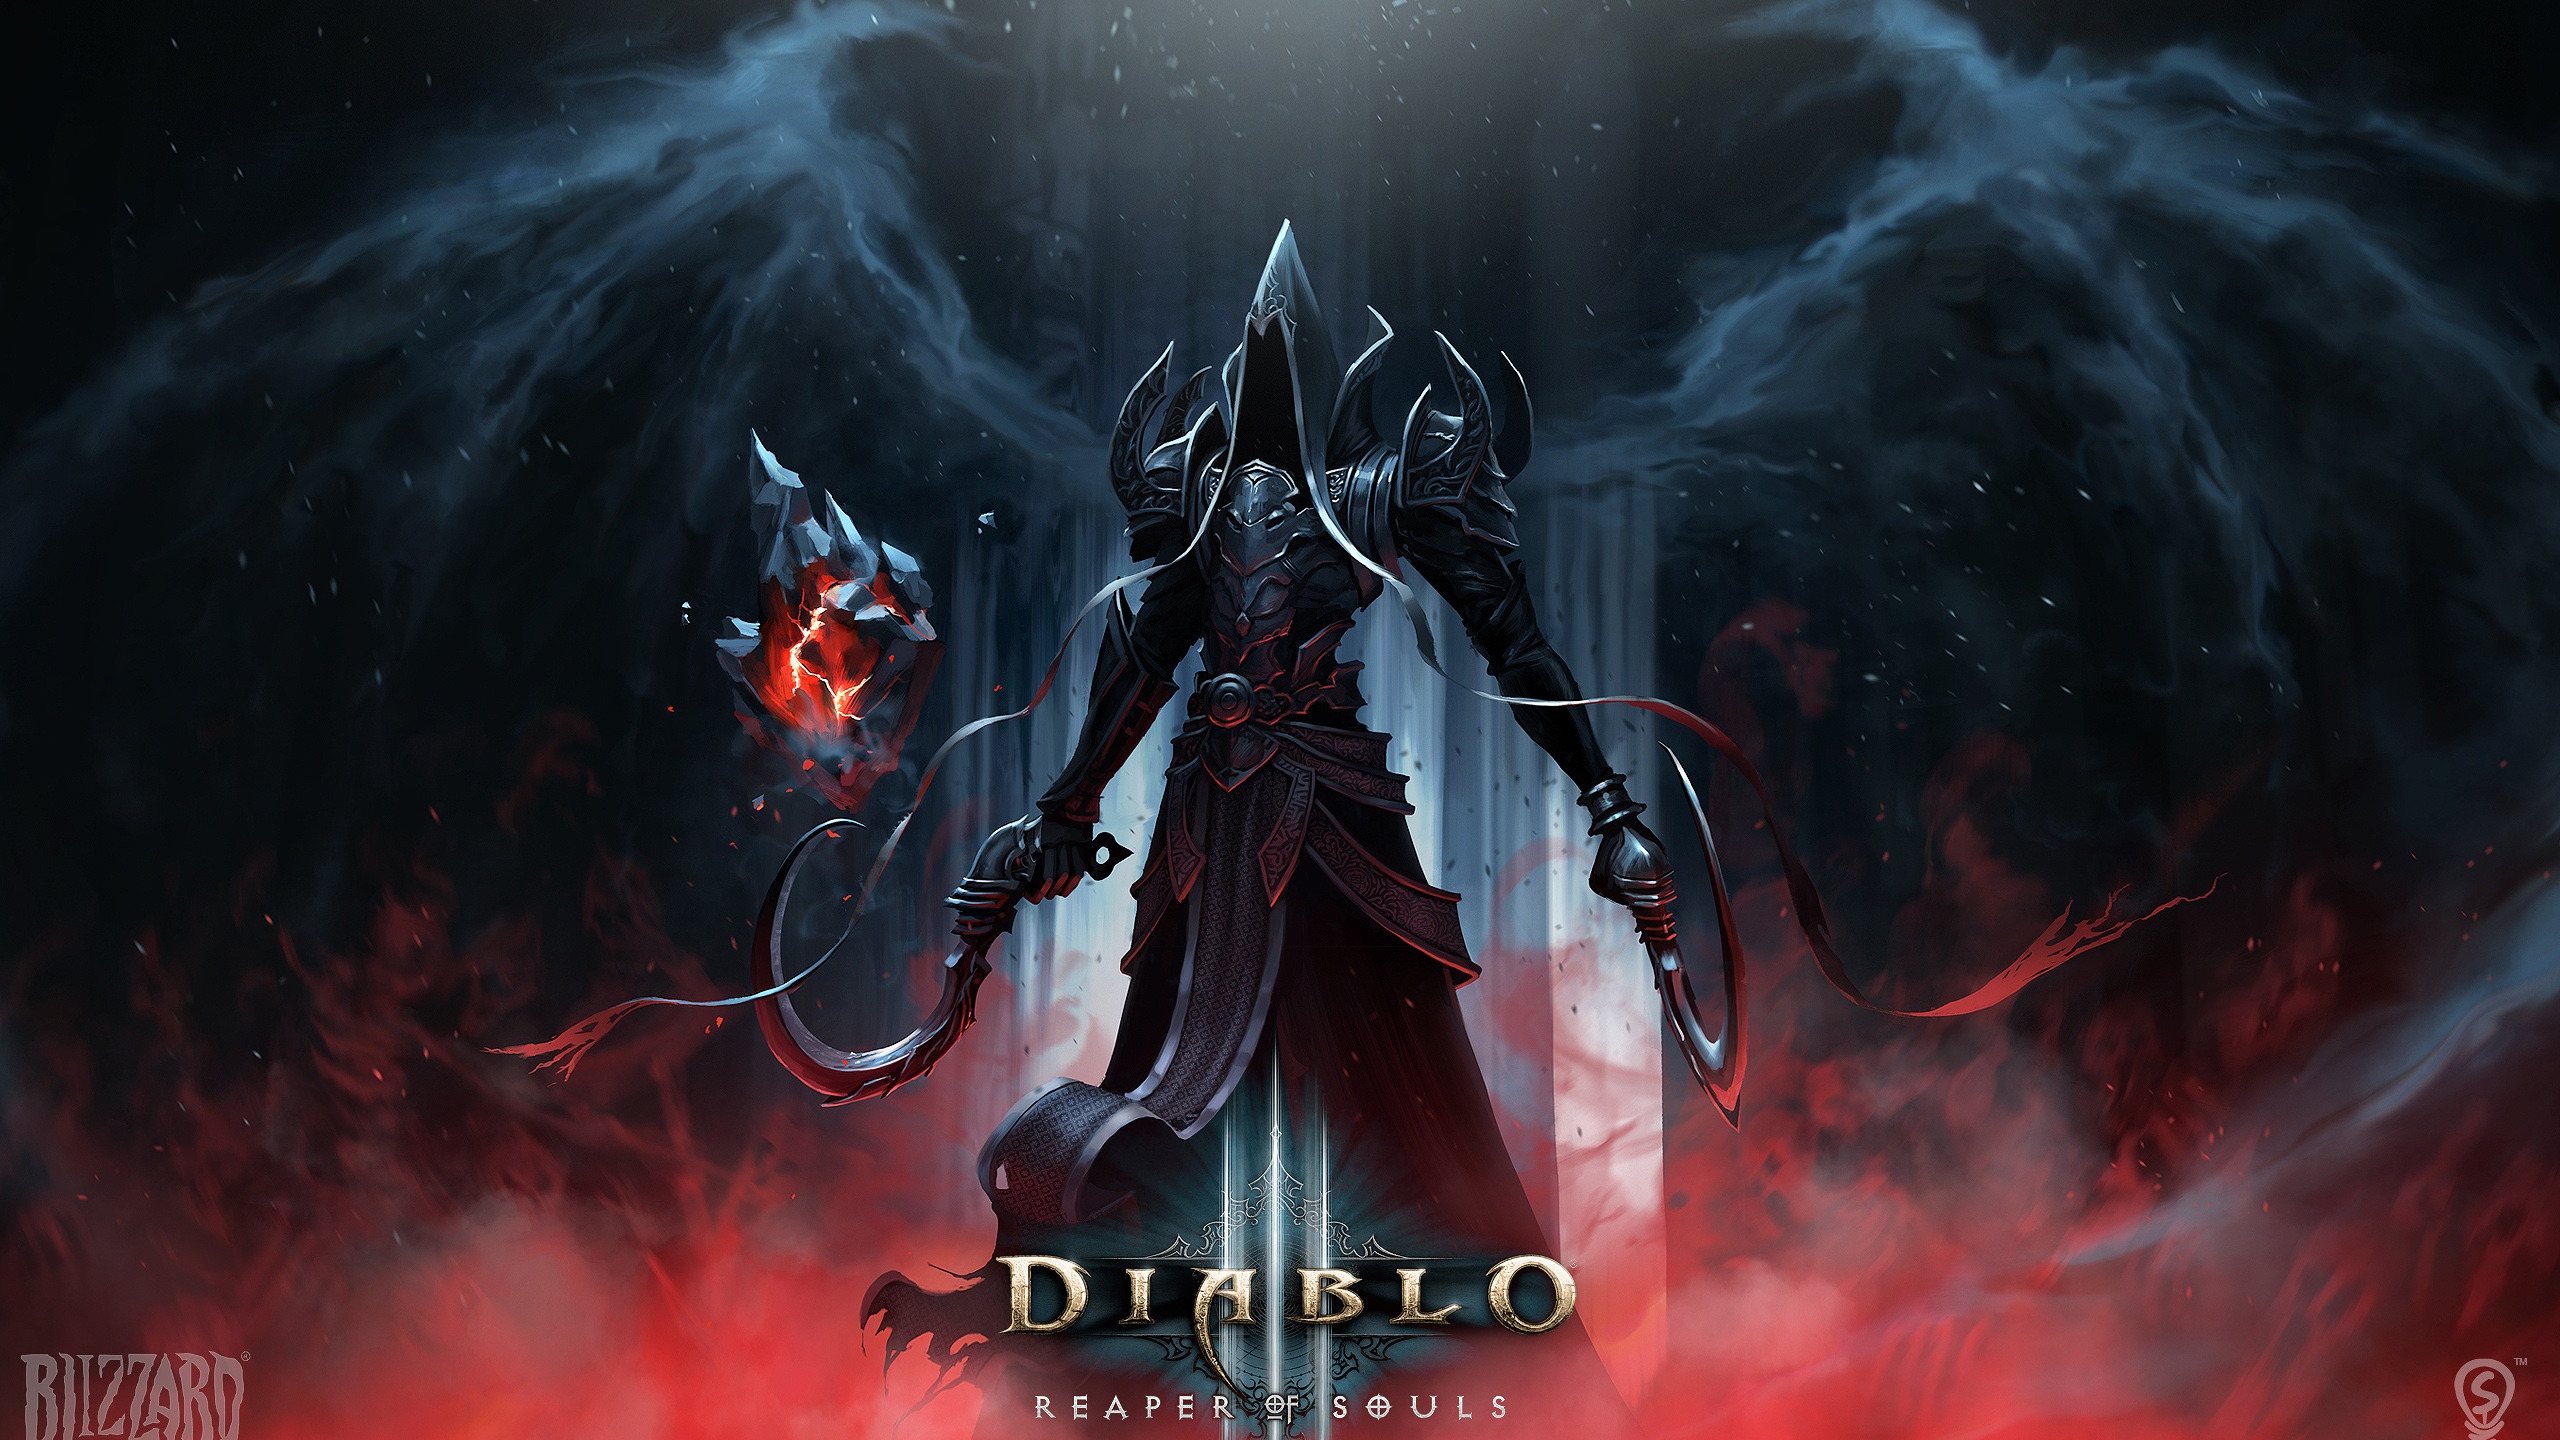 Diablo 3 Reaper of Souls for 2560x1440 HDTV resolution